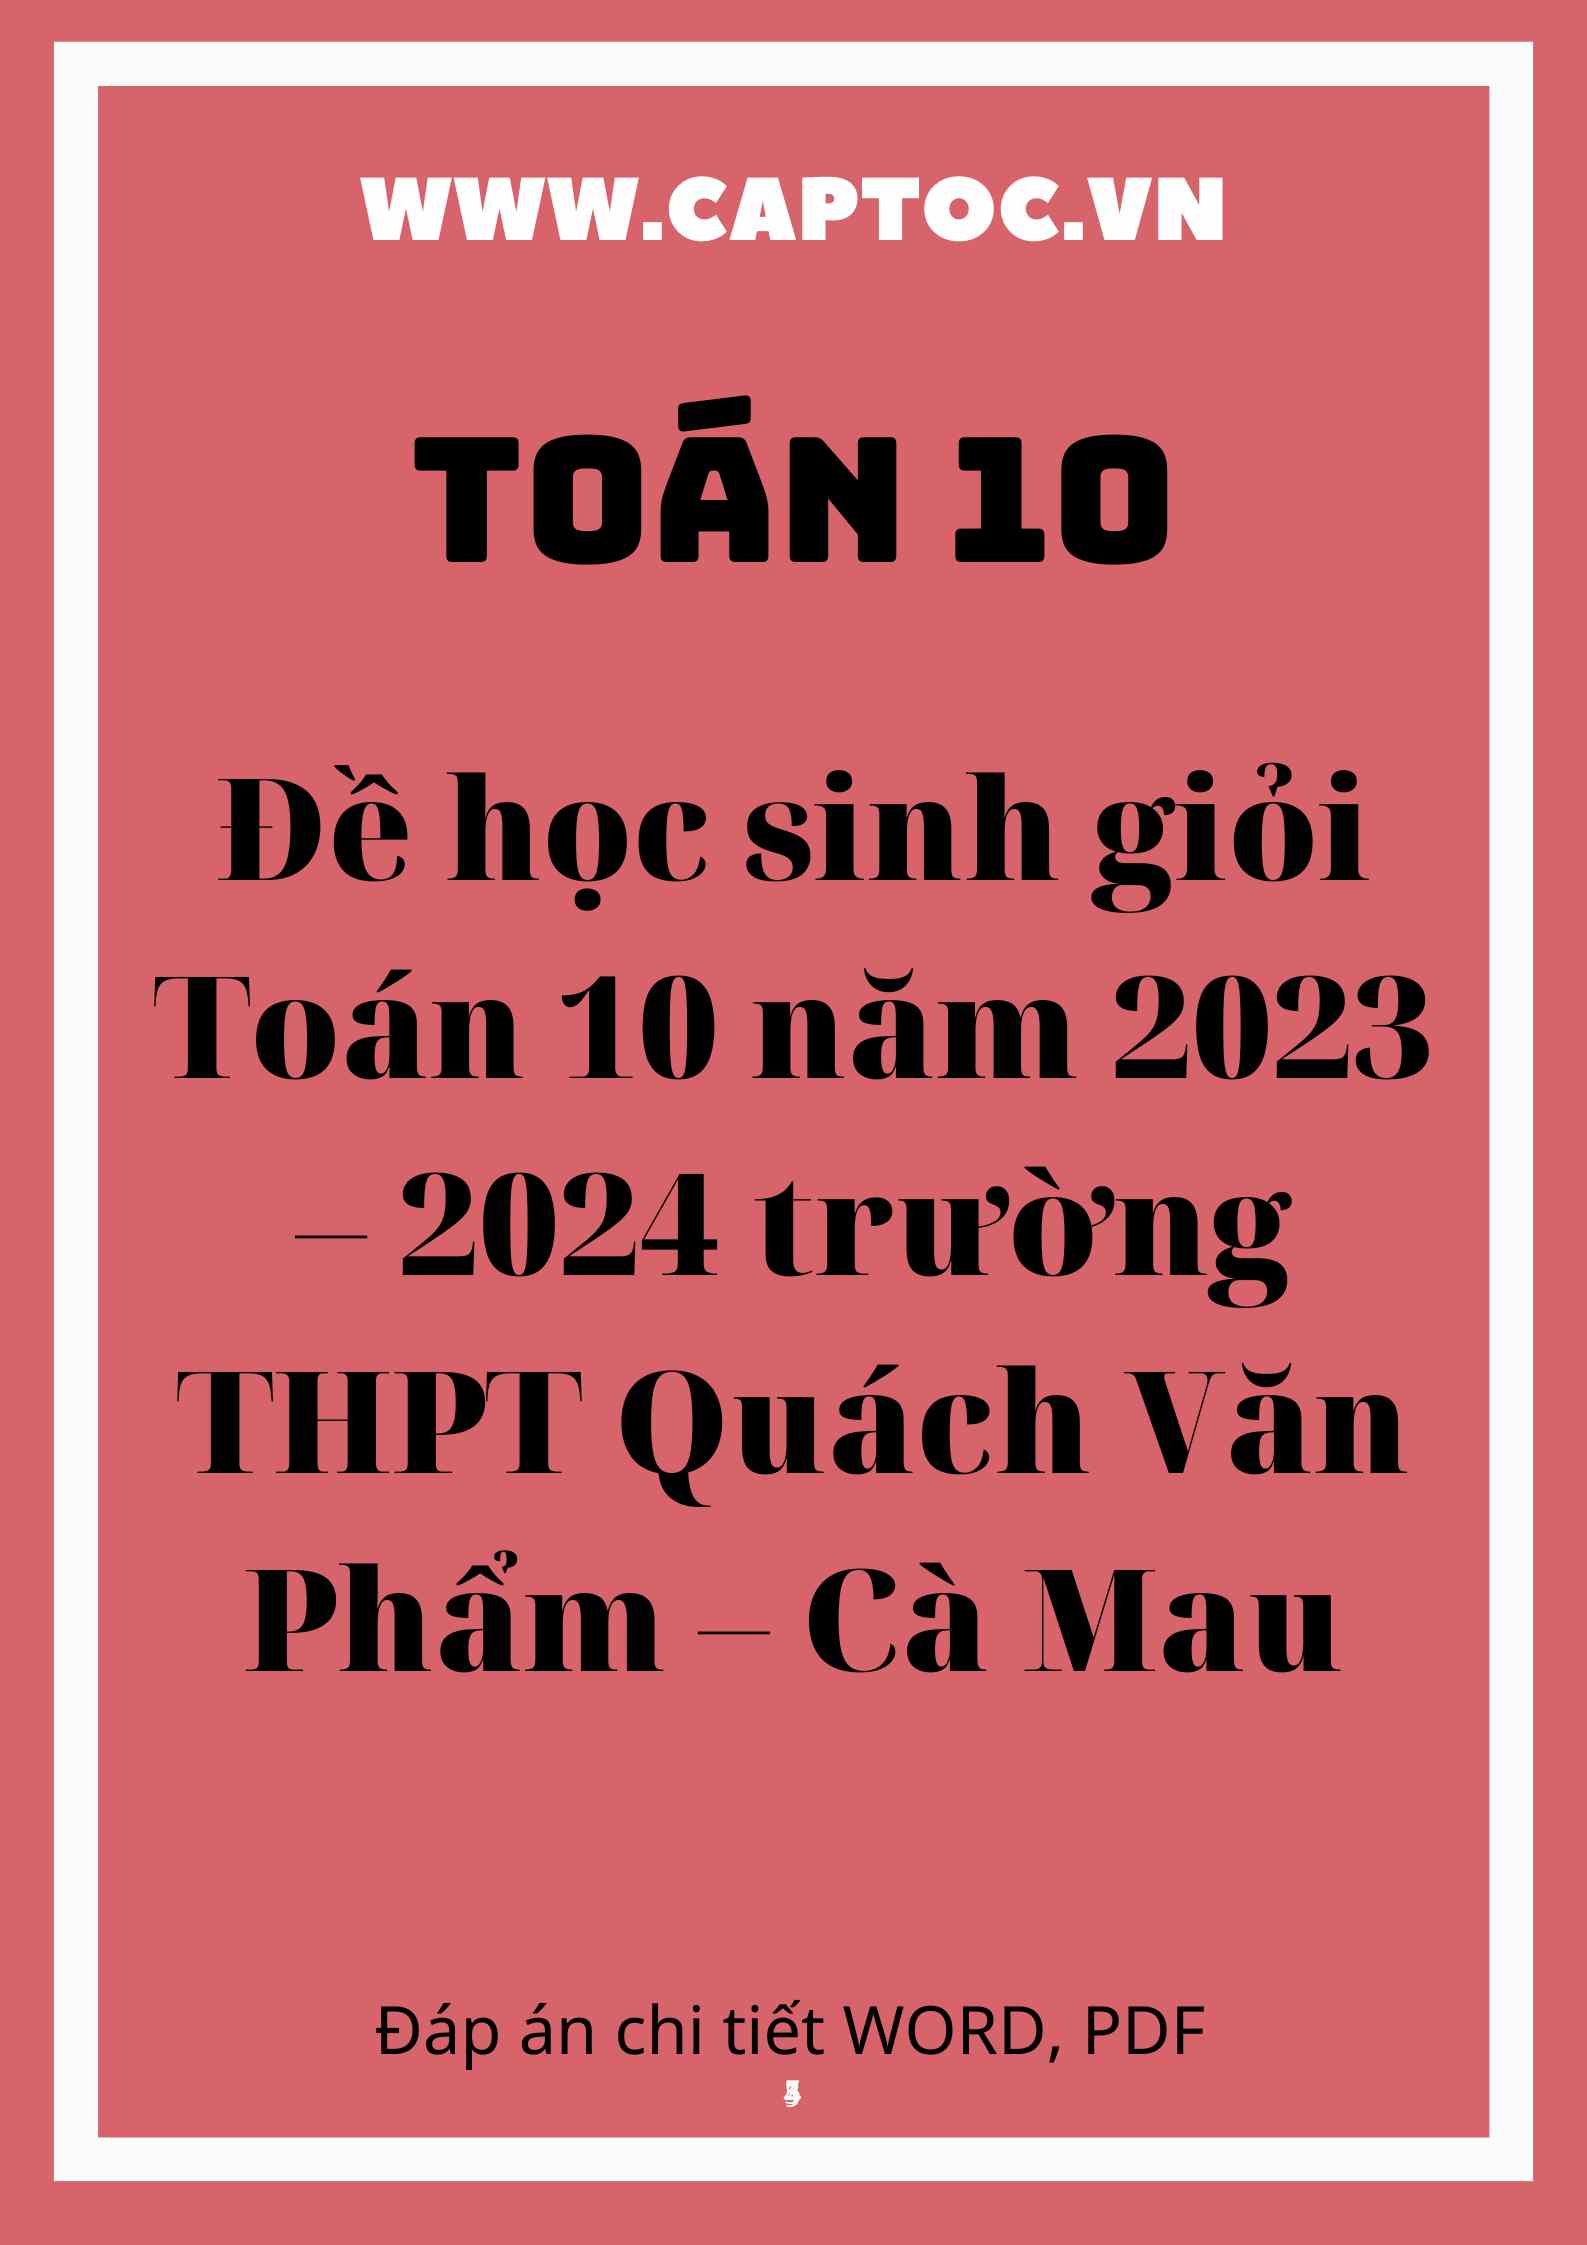 Đề học sinh giỏi Toán 10 năm 2023 – 2024 trường THPT Quách Văn Phẩm – Cà Mau